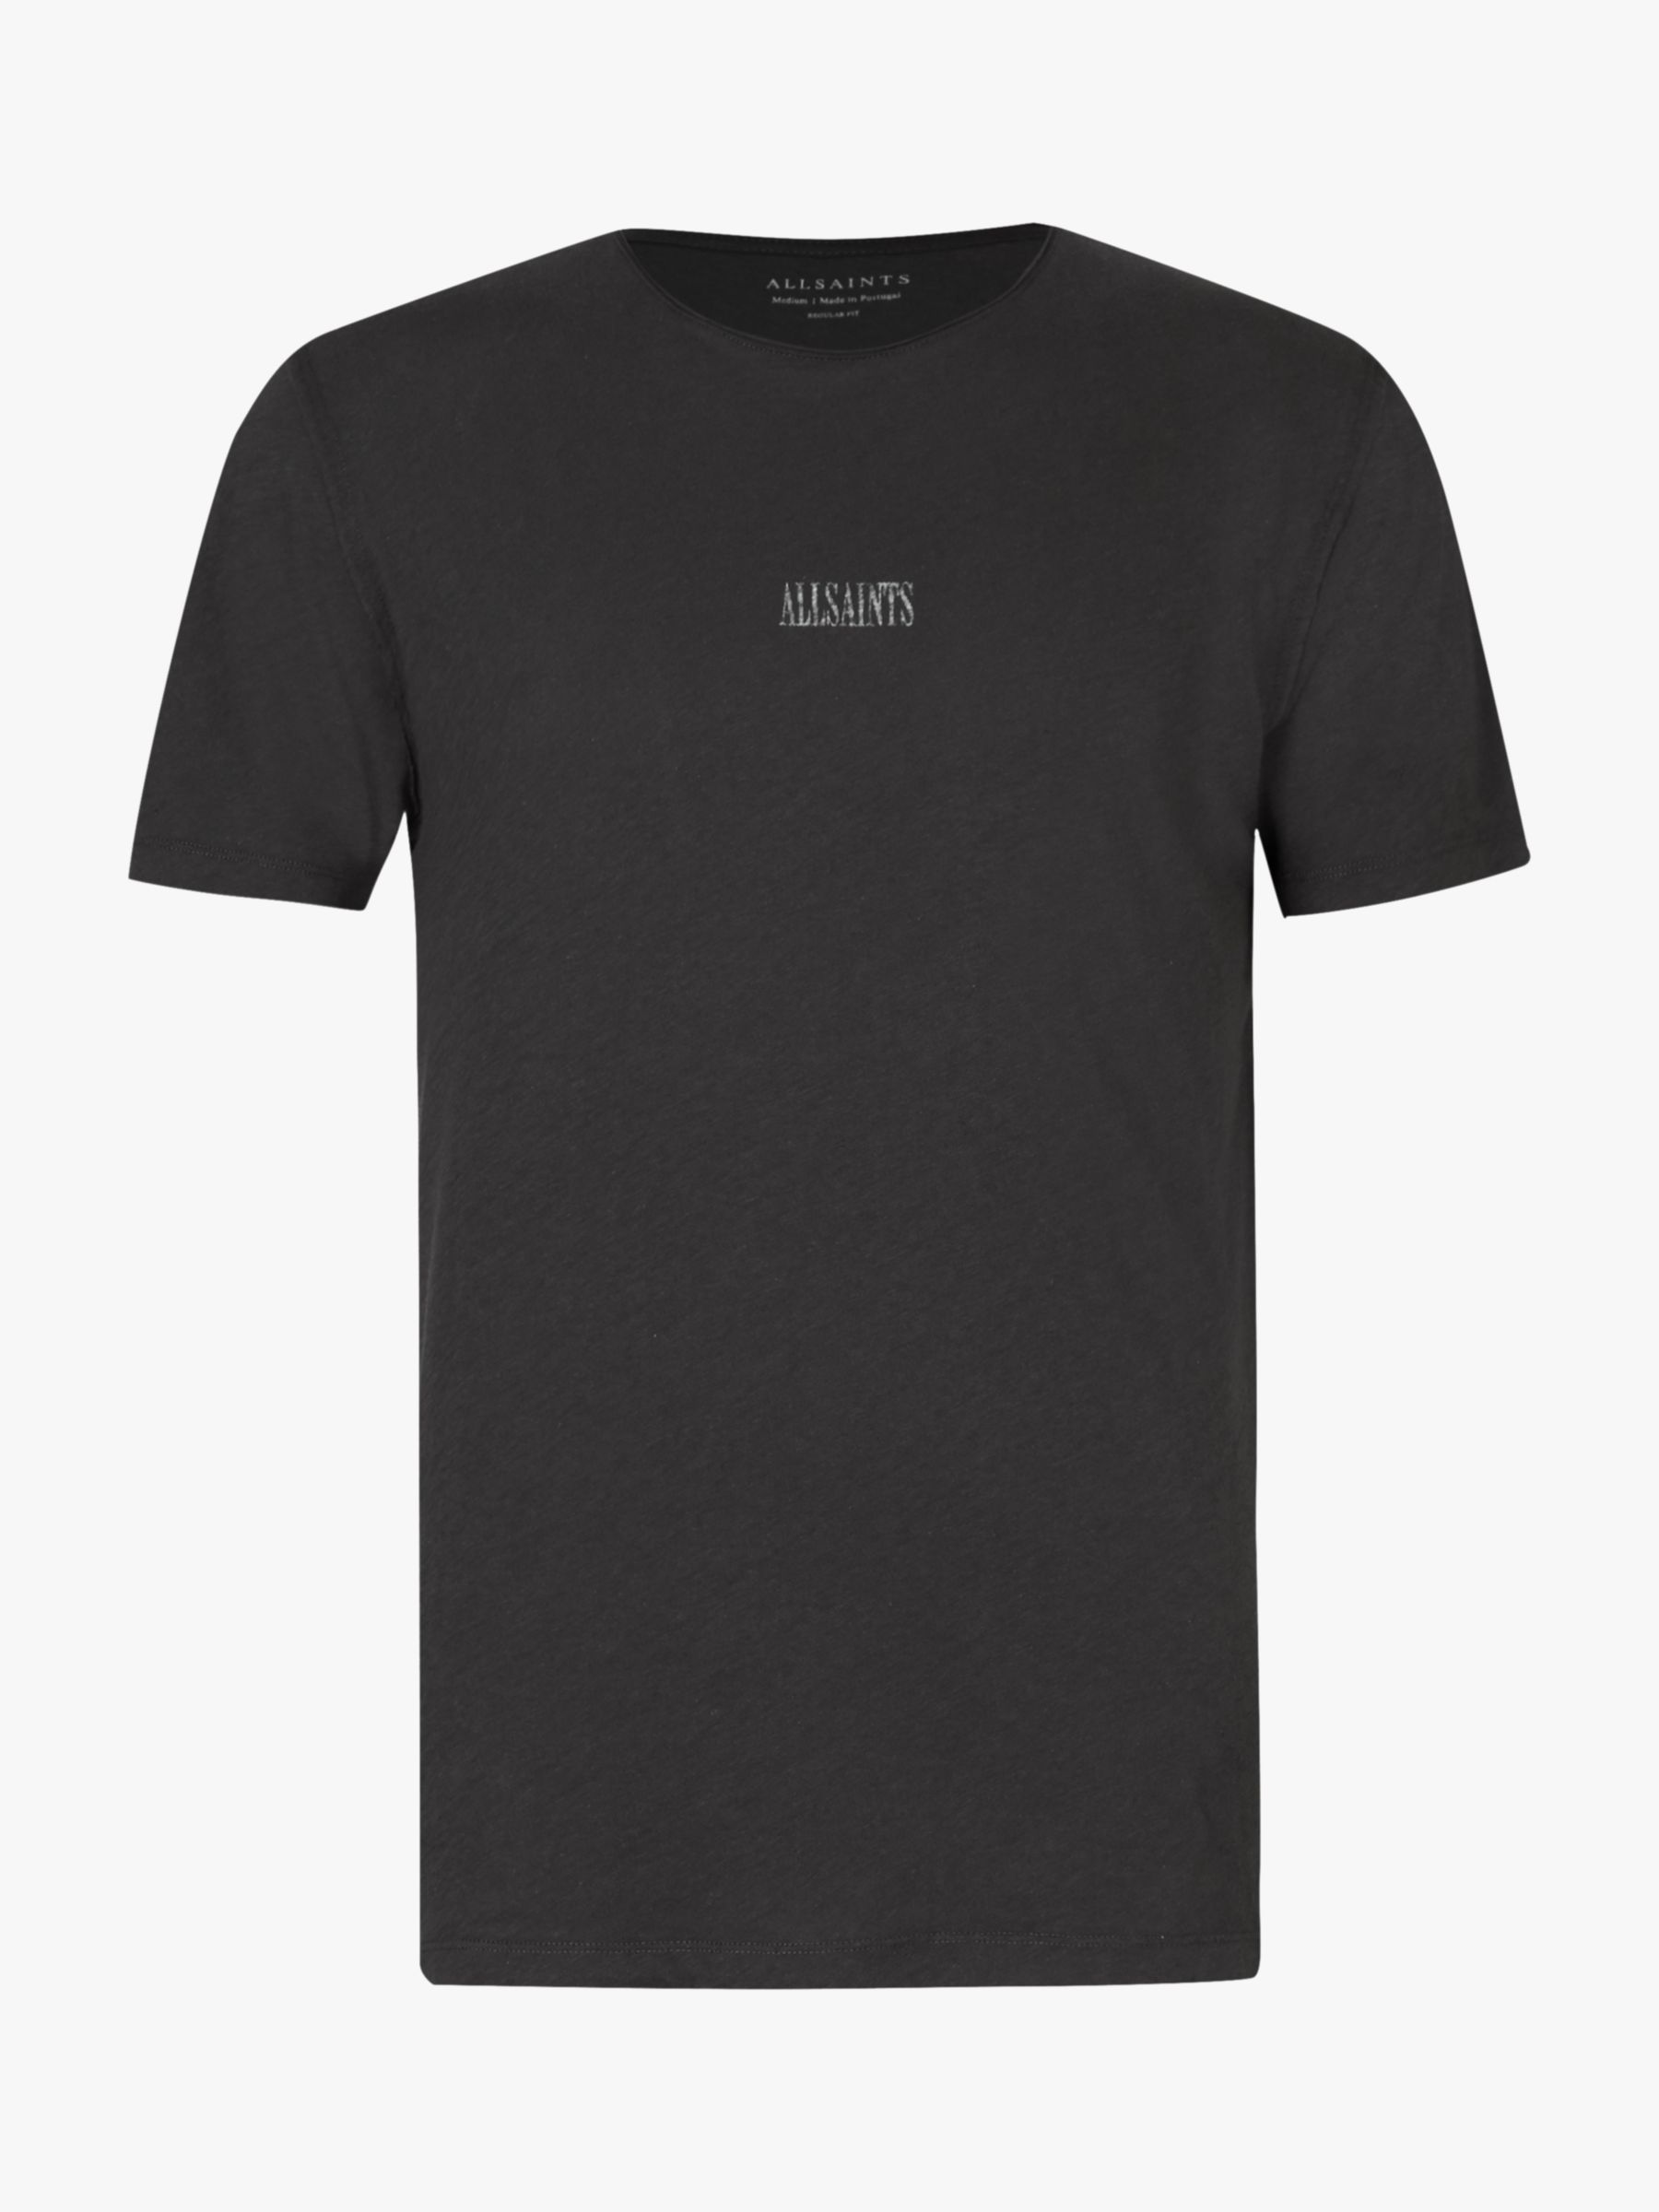 AllSaints State Logo Crew Neck T-Shirt, Washed Black at John Lewis ...